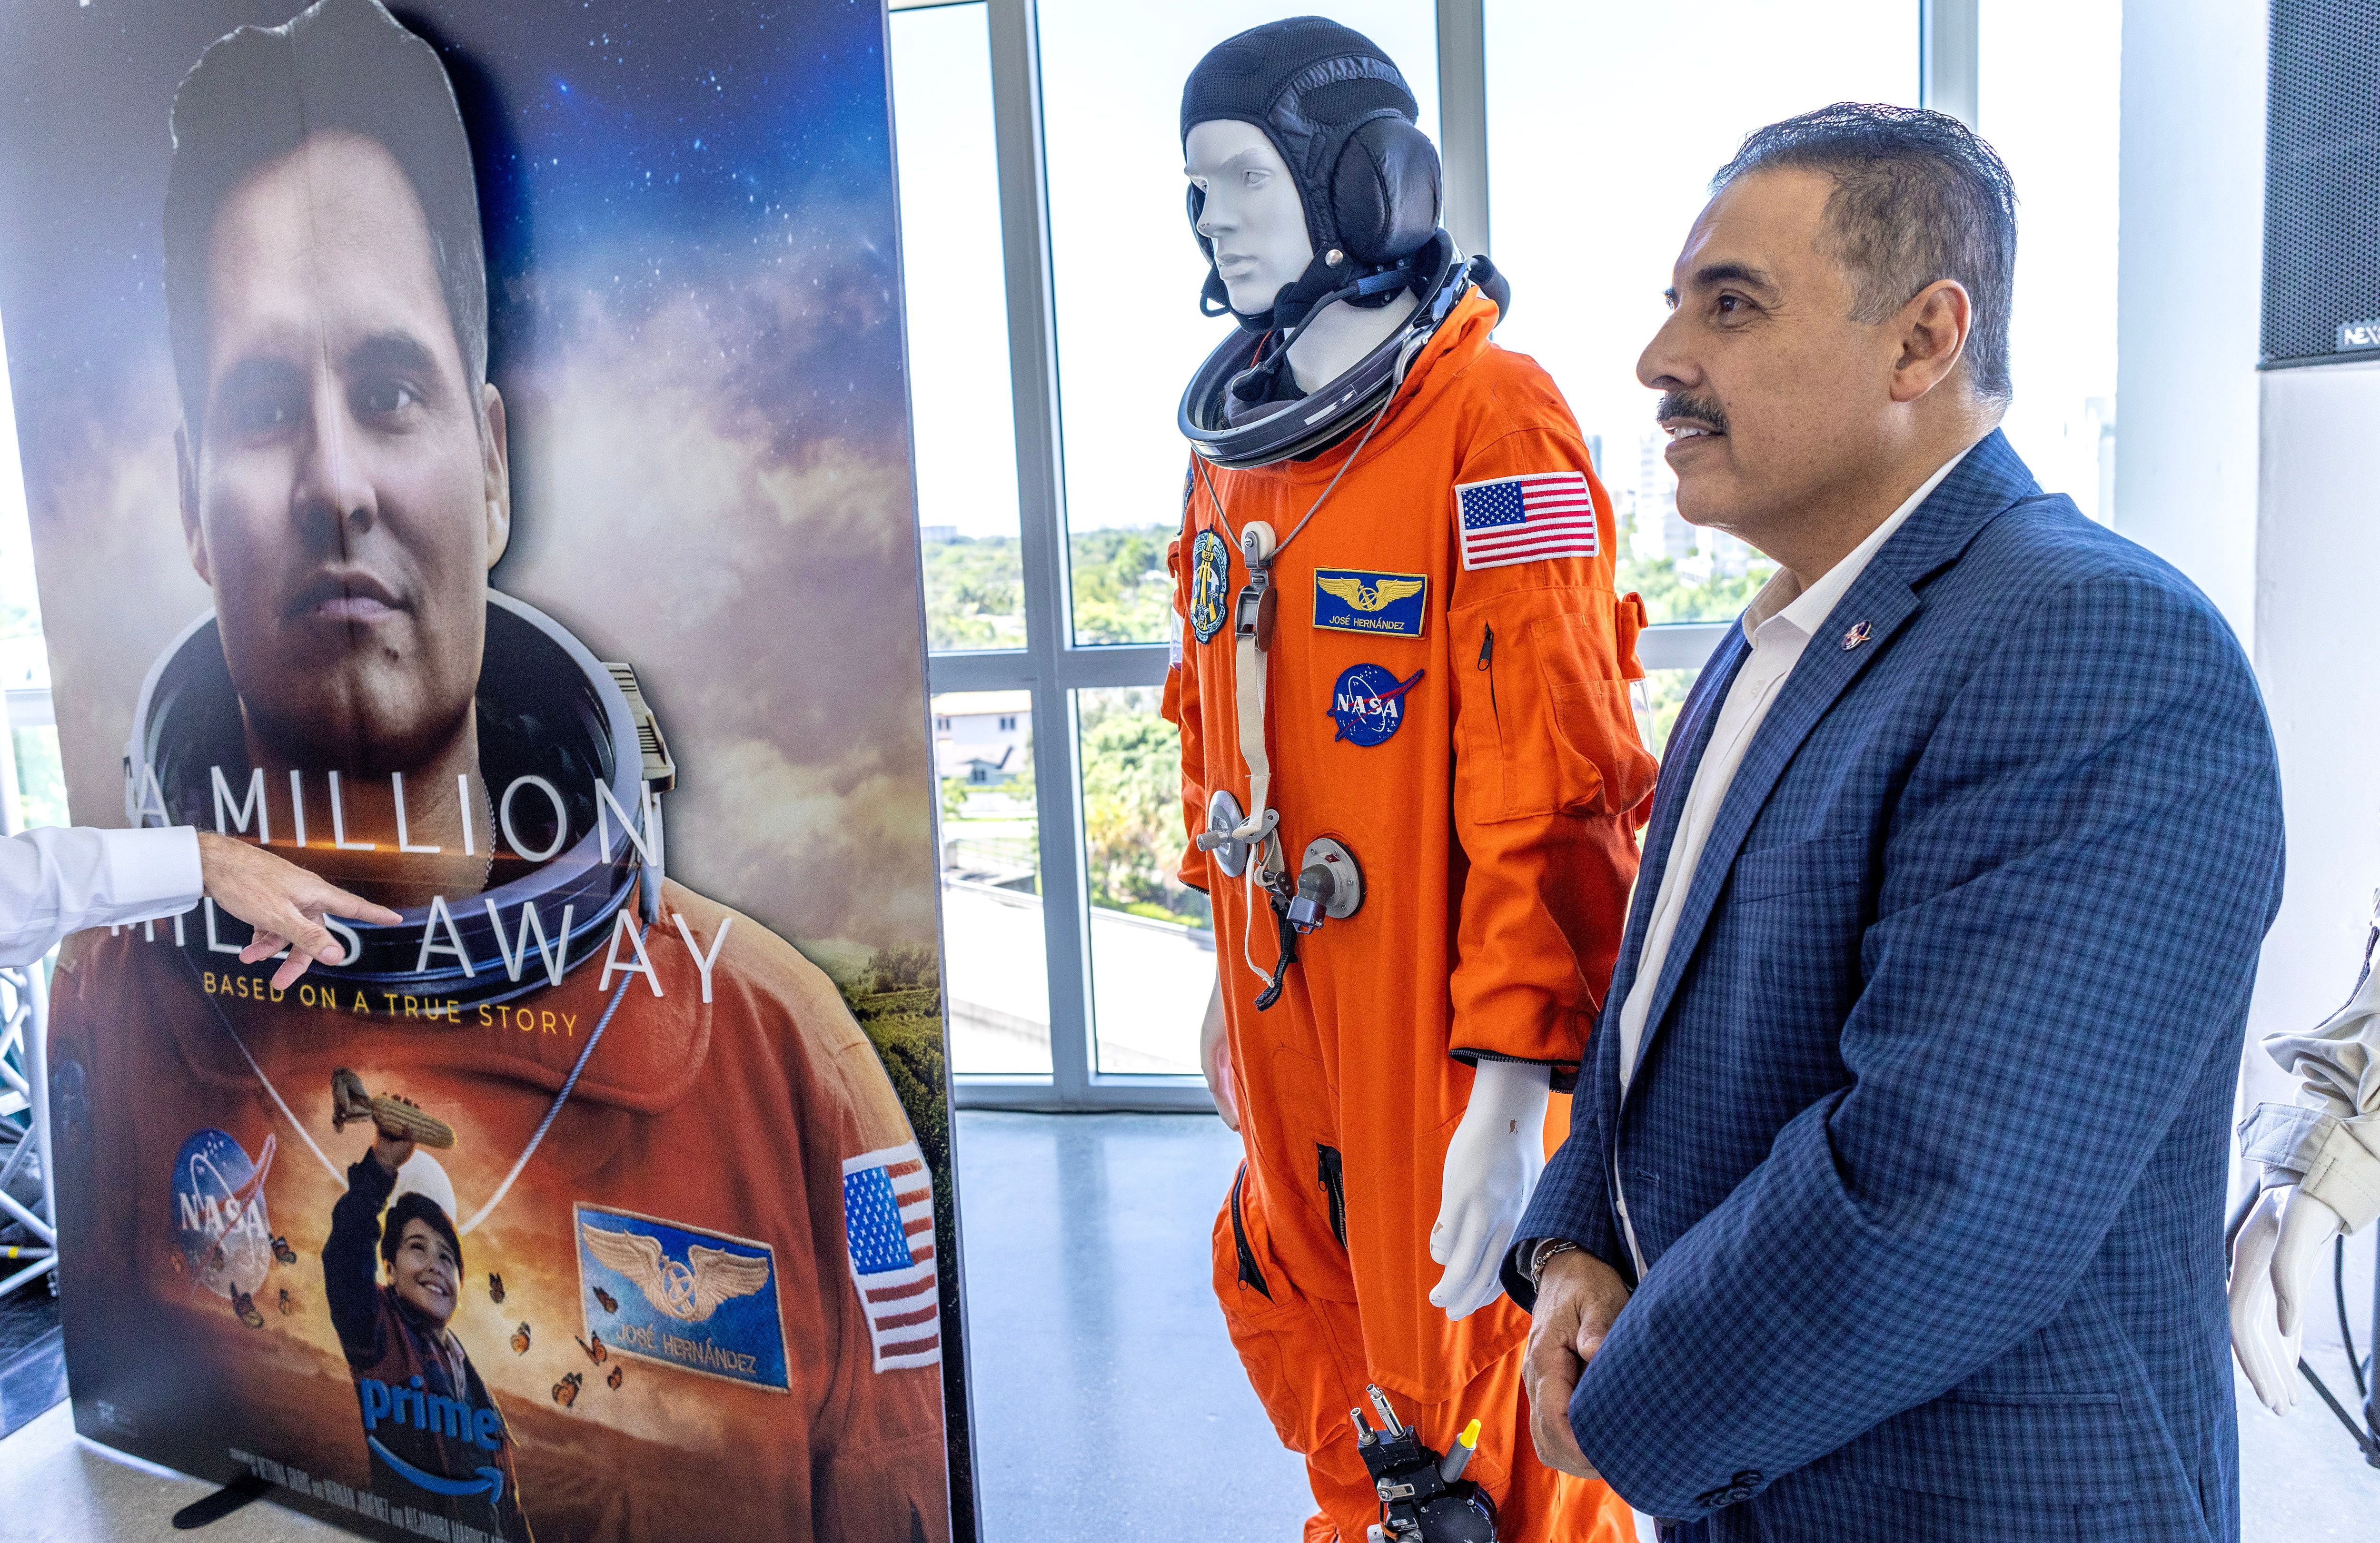 José Hernandez es un ingeniero y ex astronauta de la NASA. (Créditos: EFE/EPA/Cristobal Herrera)
